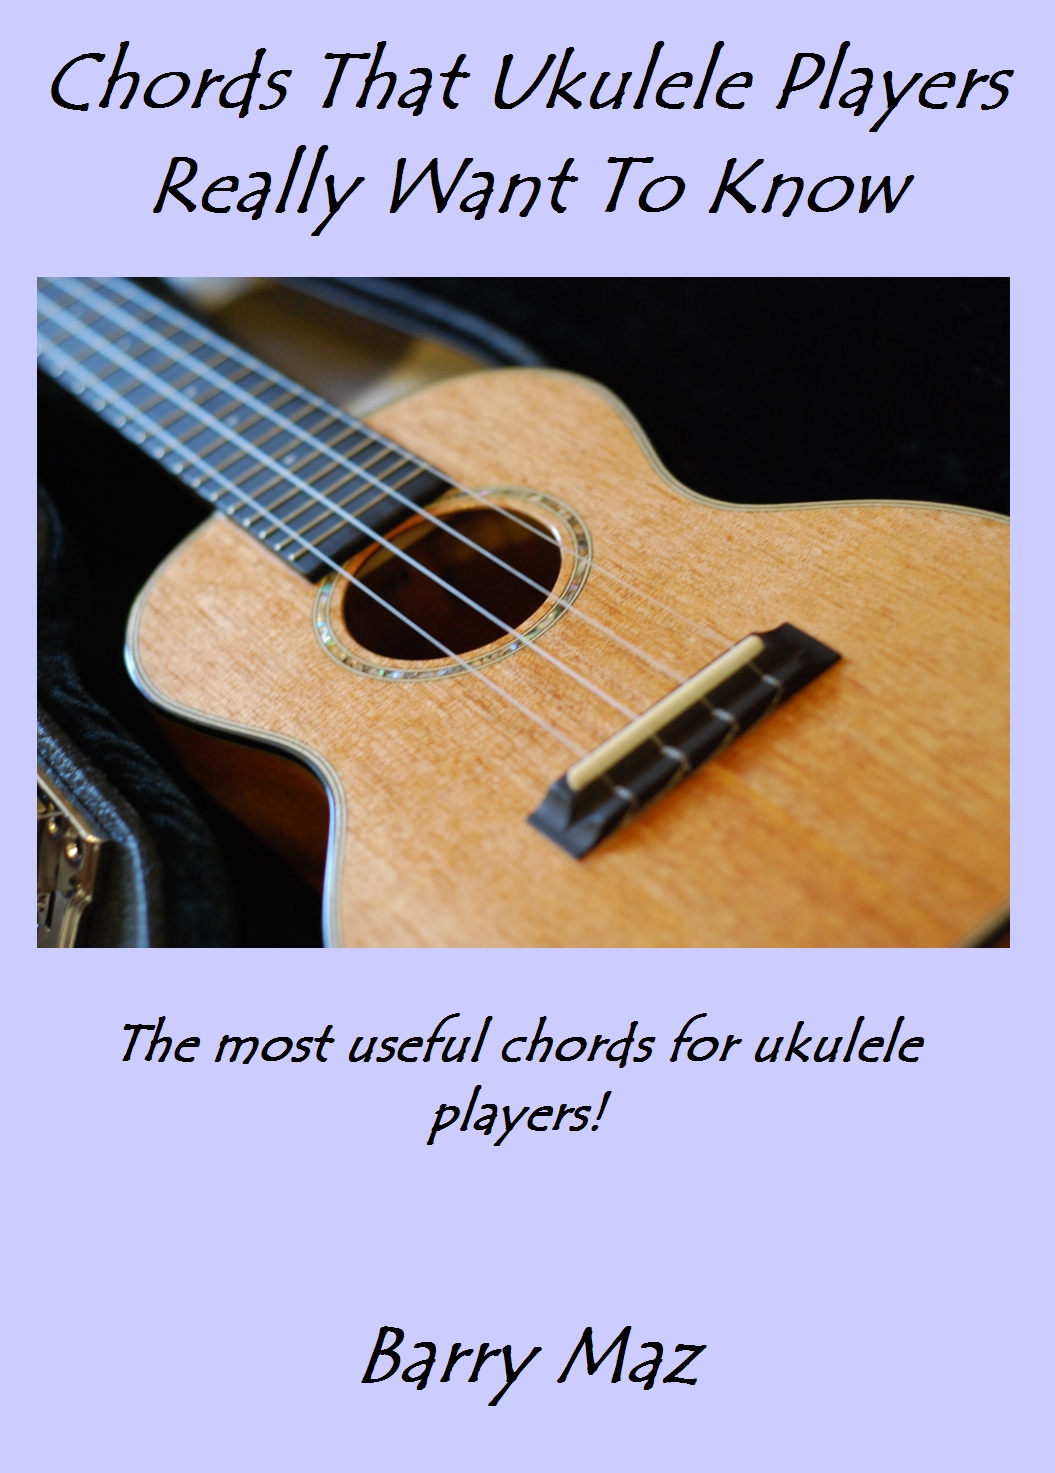 chords-for-ukulele-players-new-ebook